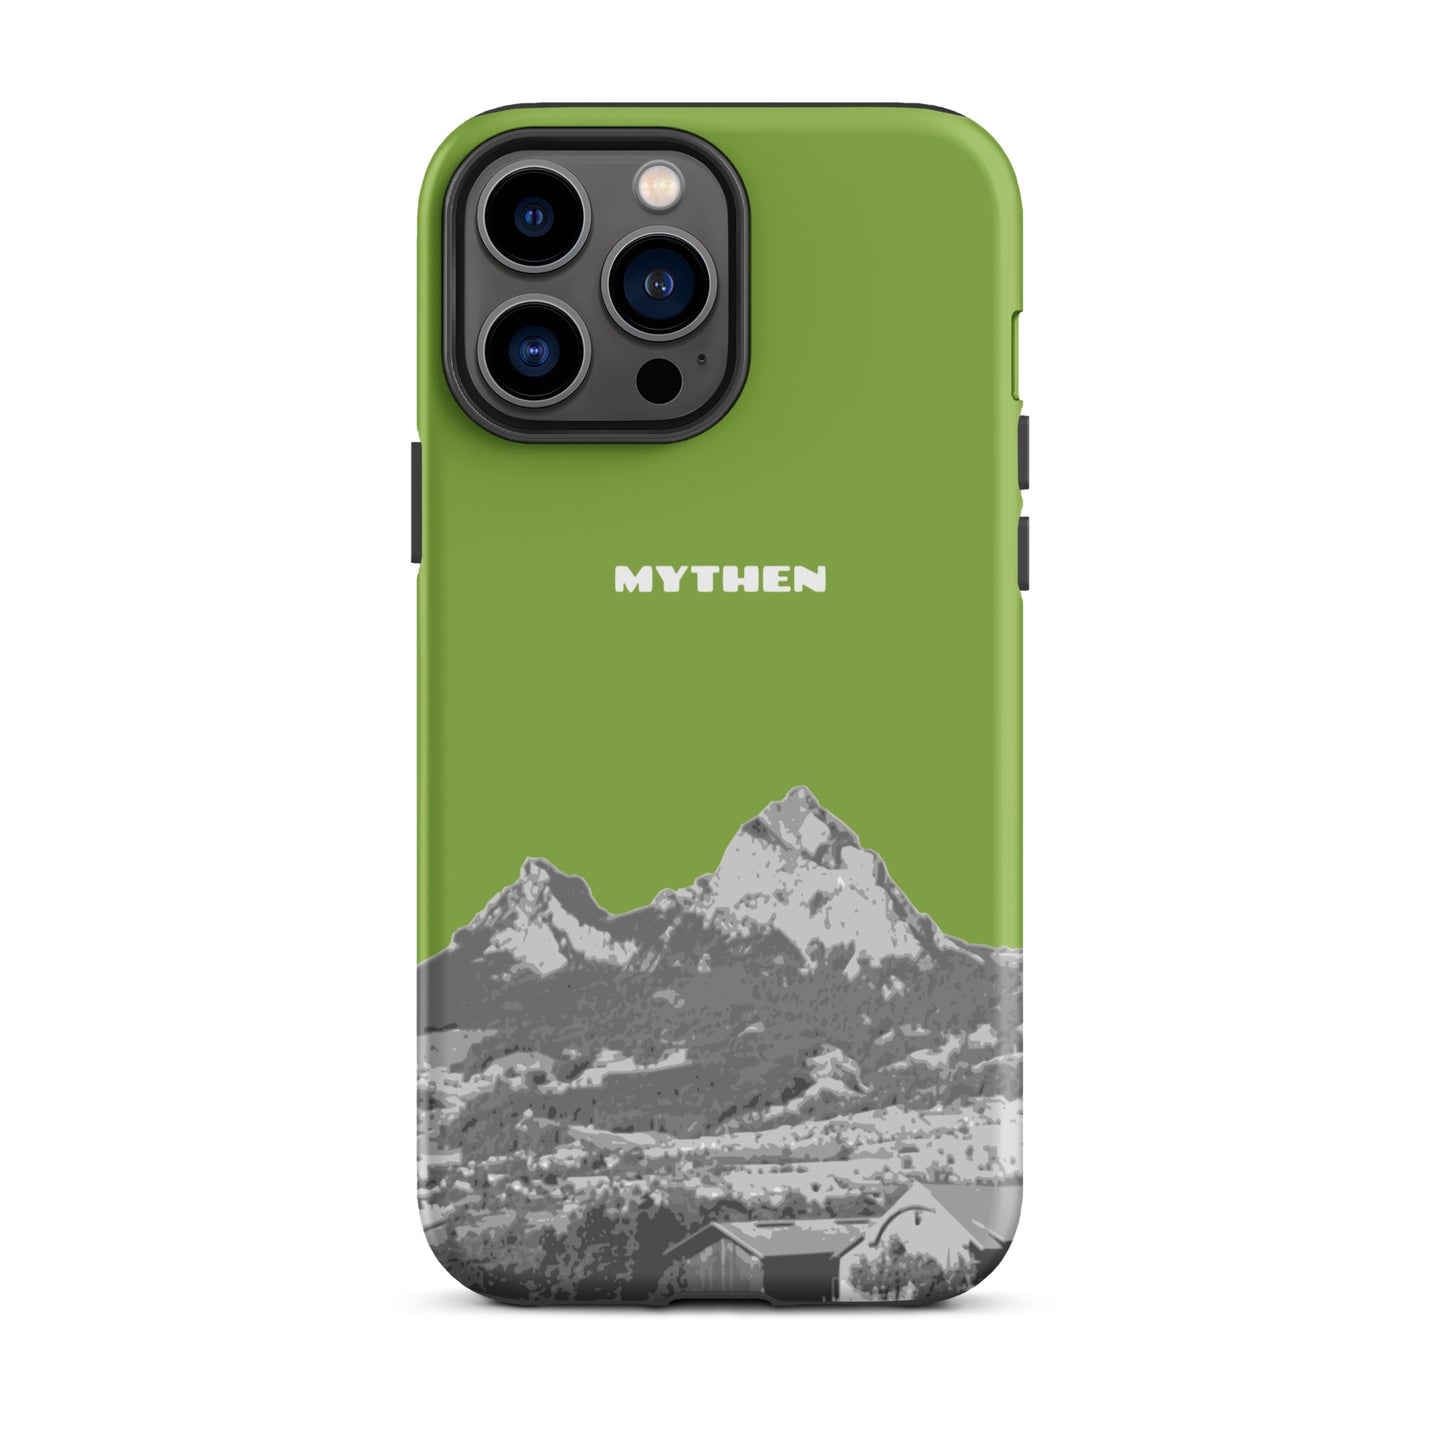 Hülle für das iPhone 13 Pro Max von Apple in der Farbe Gelbgrün, die den Grossen Mythen und den Kleinen Mythen bei Schwyz zeigt. 